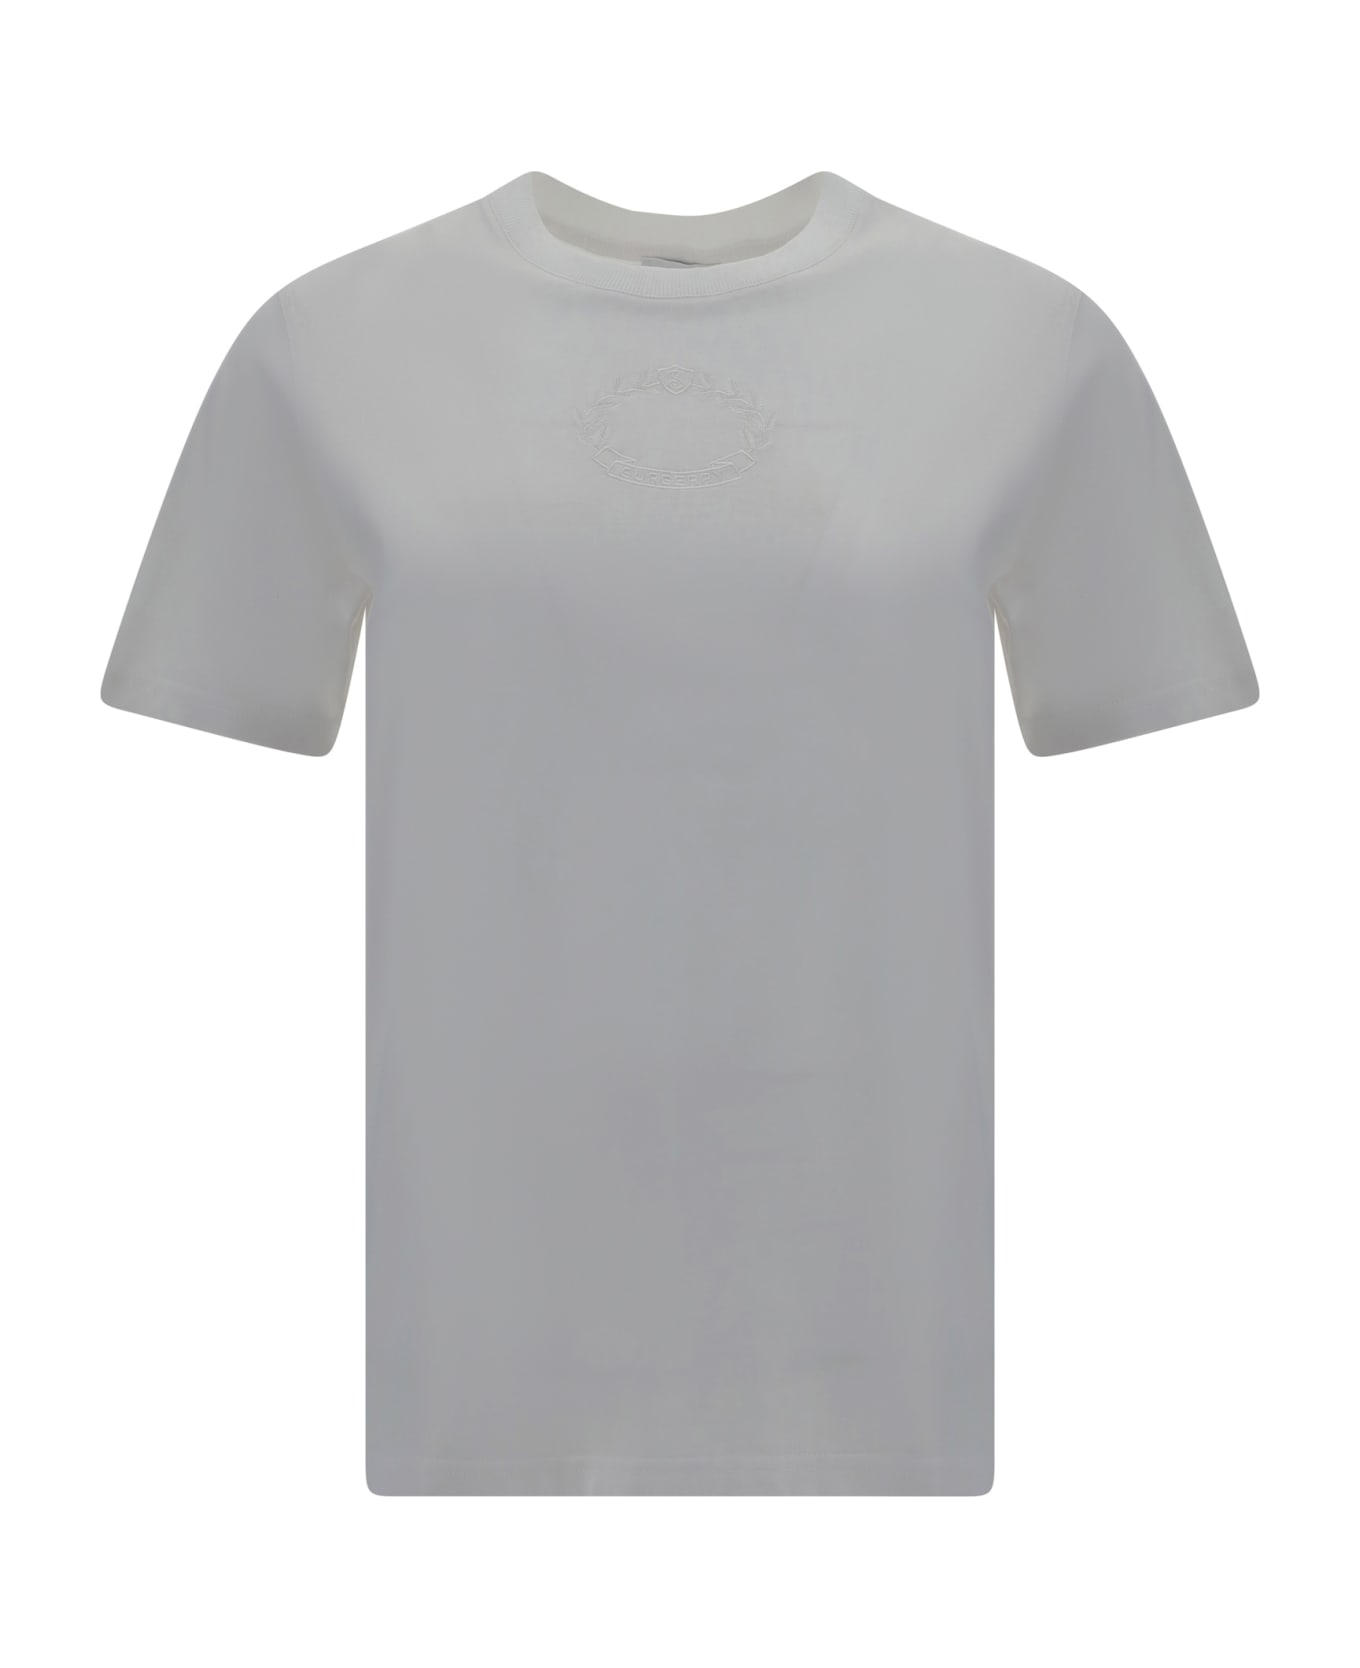 Burberry White Cotton T-shirt - White Tシャツ